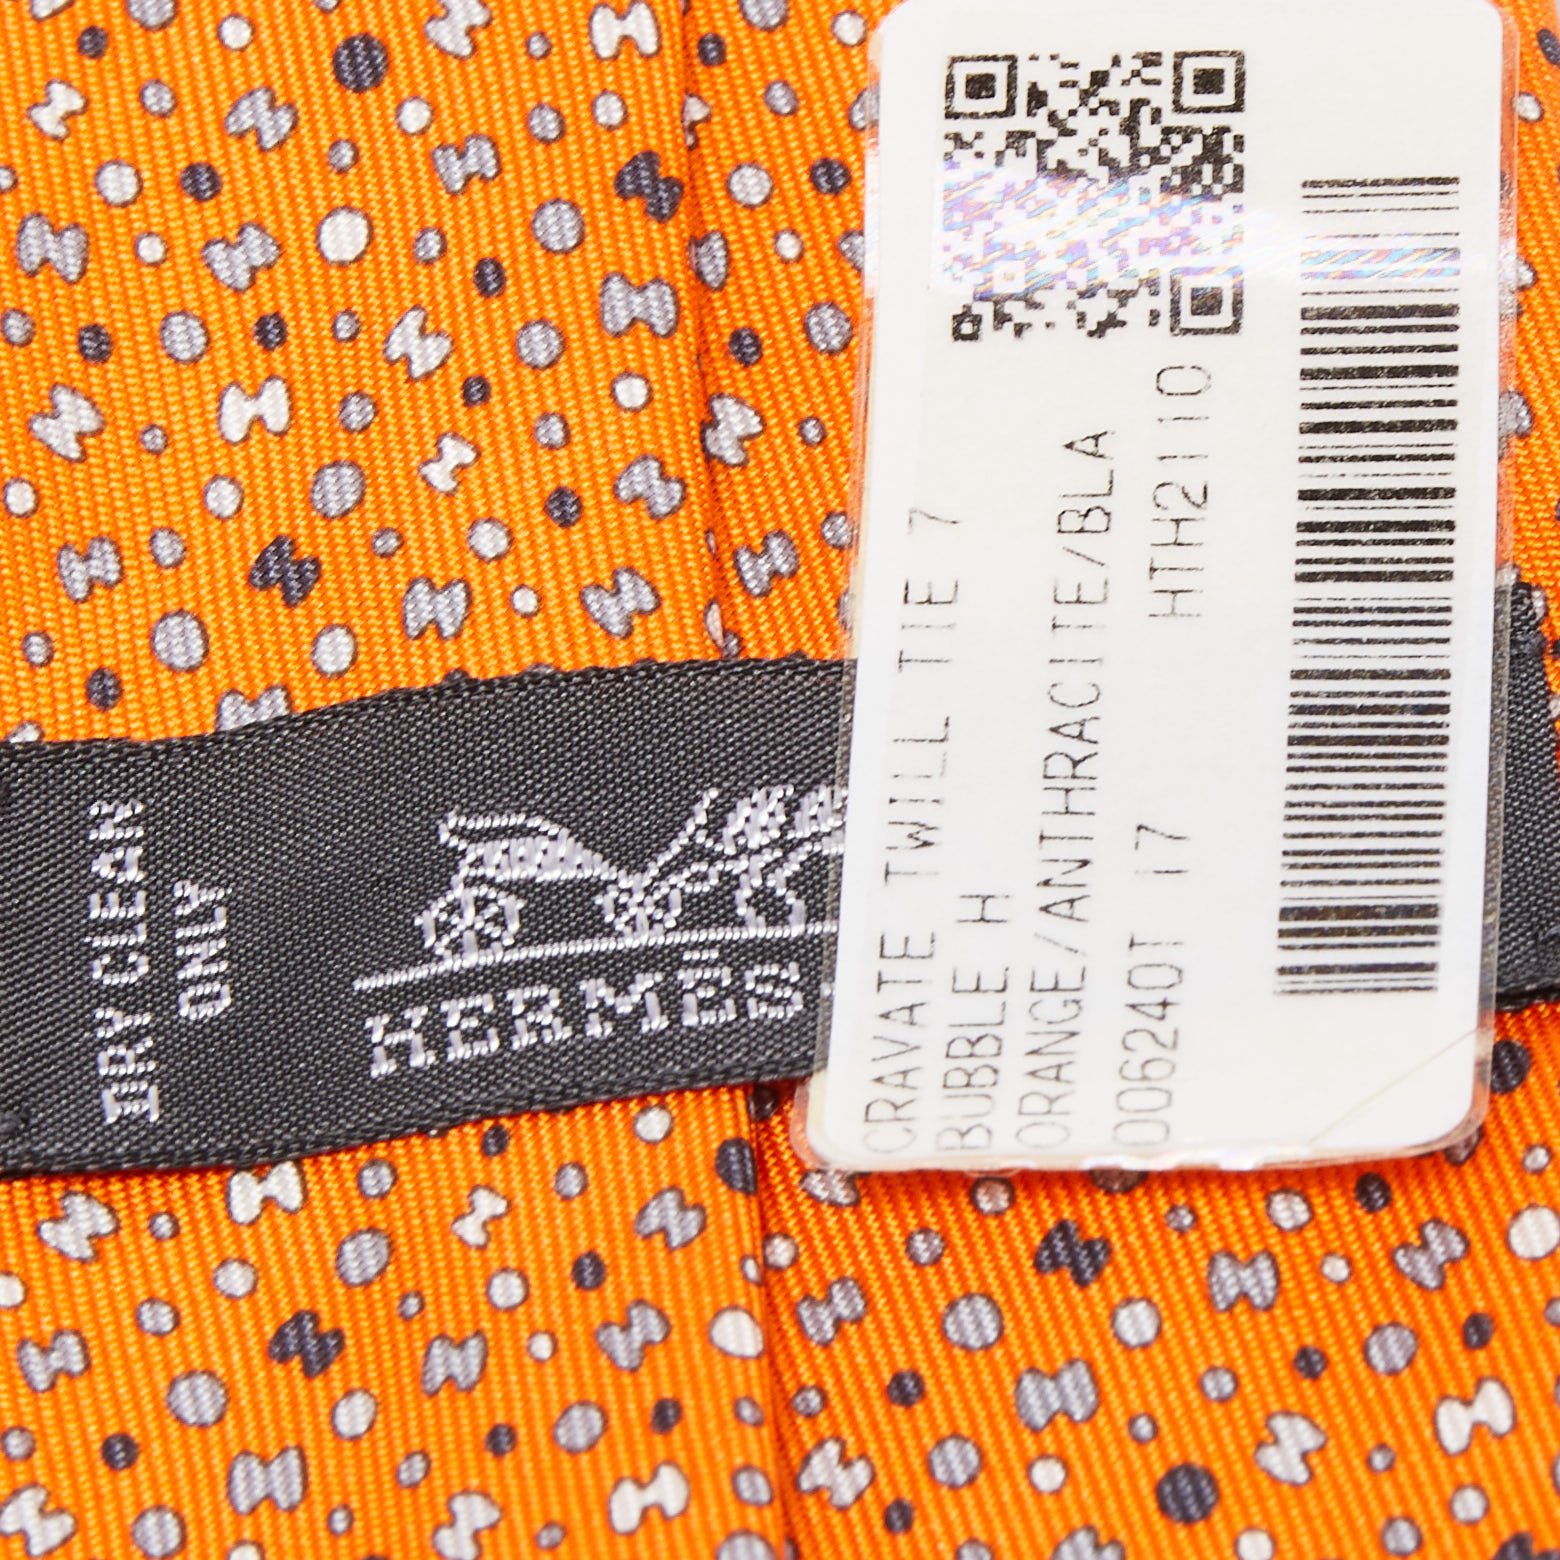 Hermes Orange 7 Bubble H Printed Silk Slim Tie